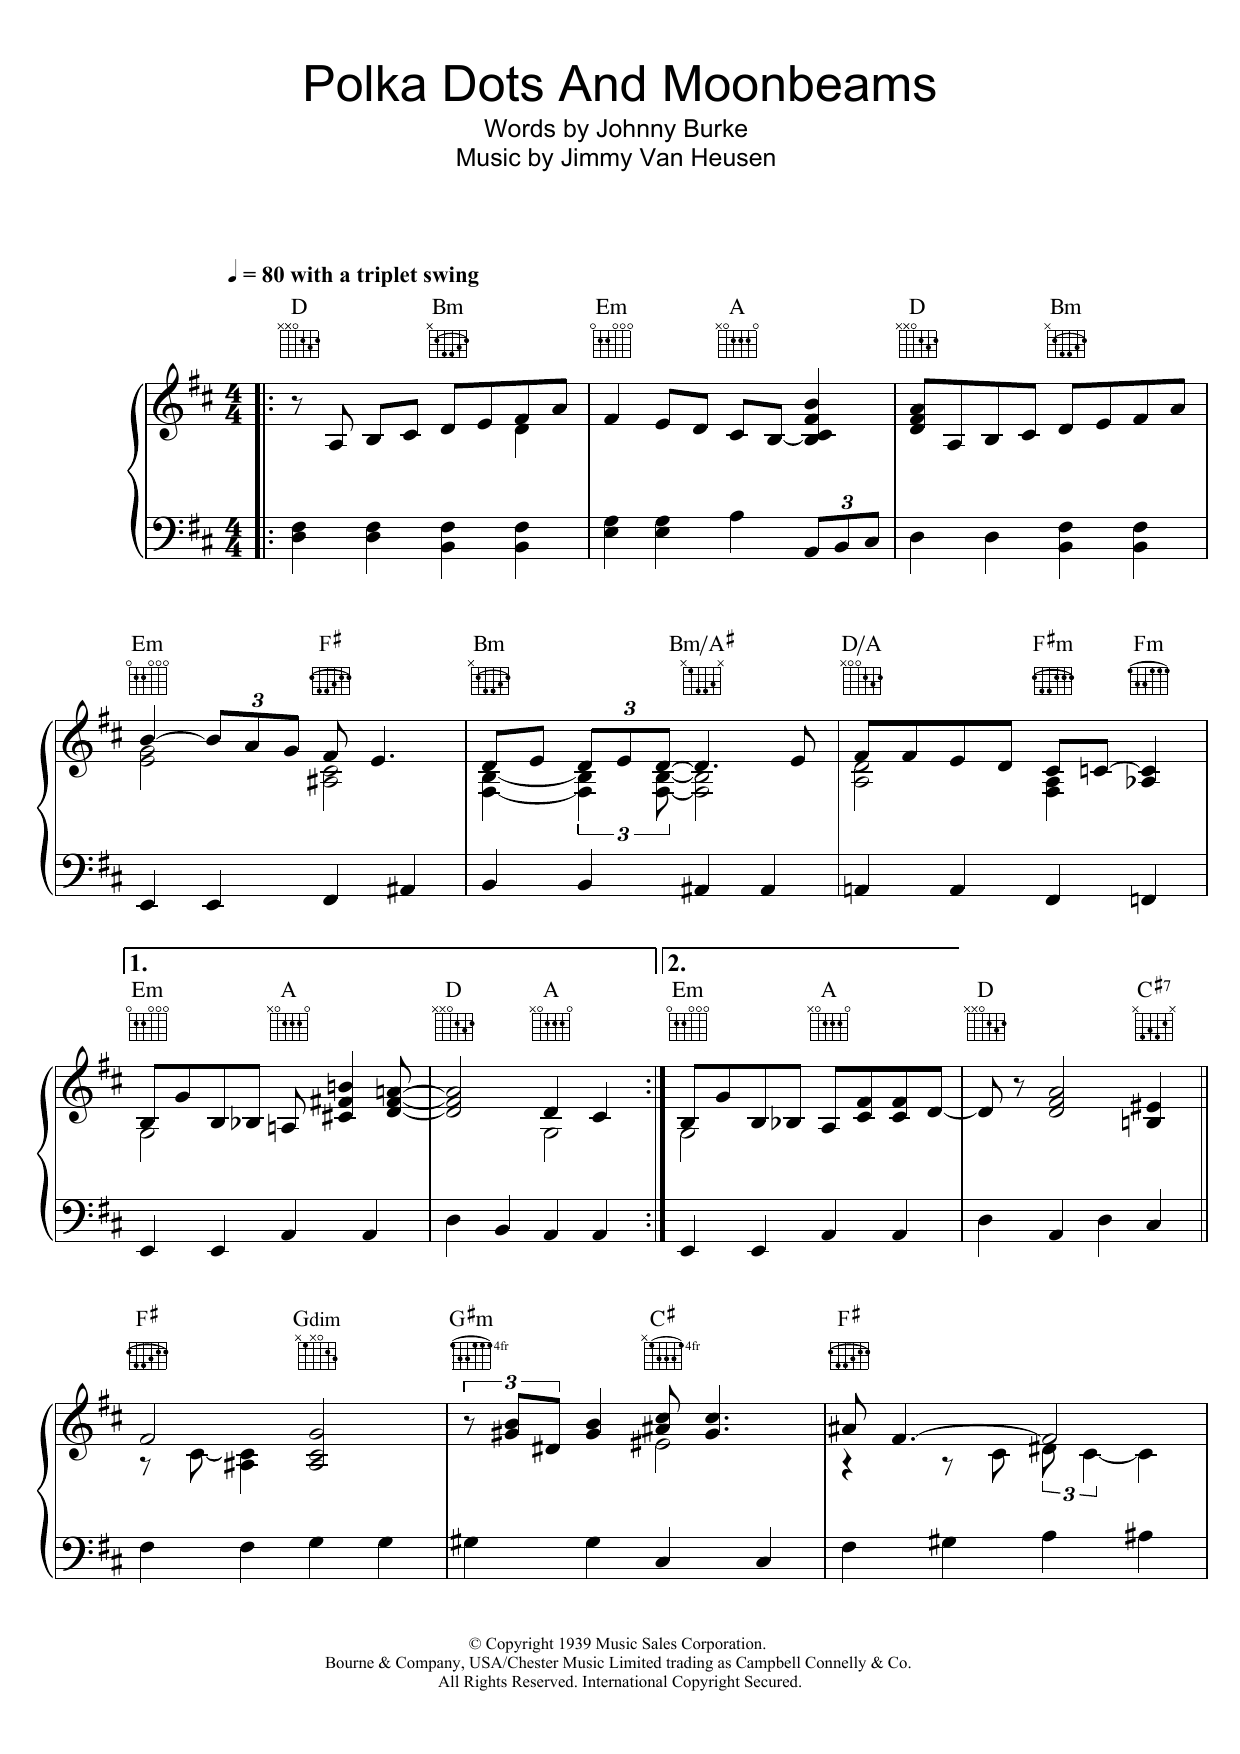 Bob Dylan Polka Dots And Moonbeams Sheet Music Notes & Chords for Piano, Vocal & Guitar (Right-Hand Melody) - Download or Print PDF